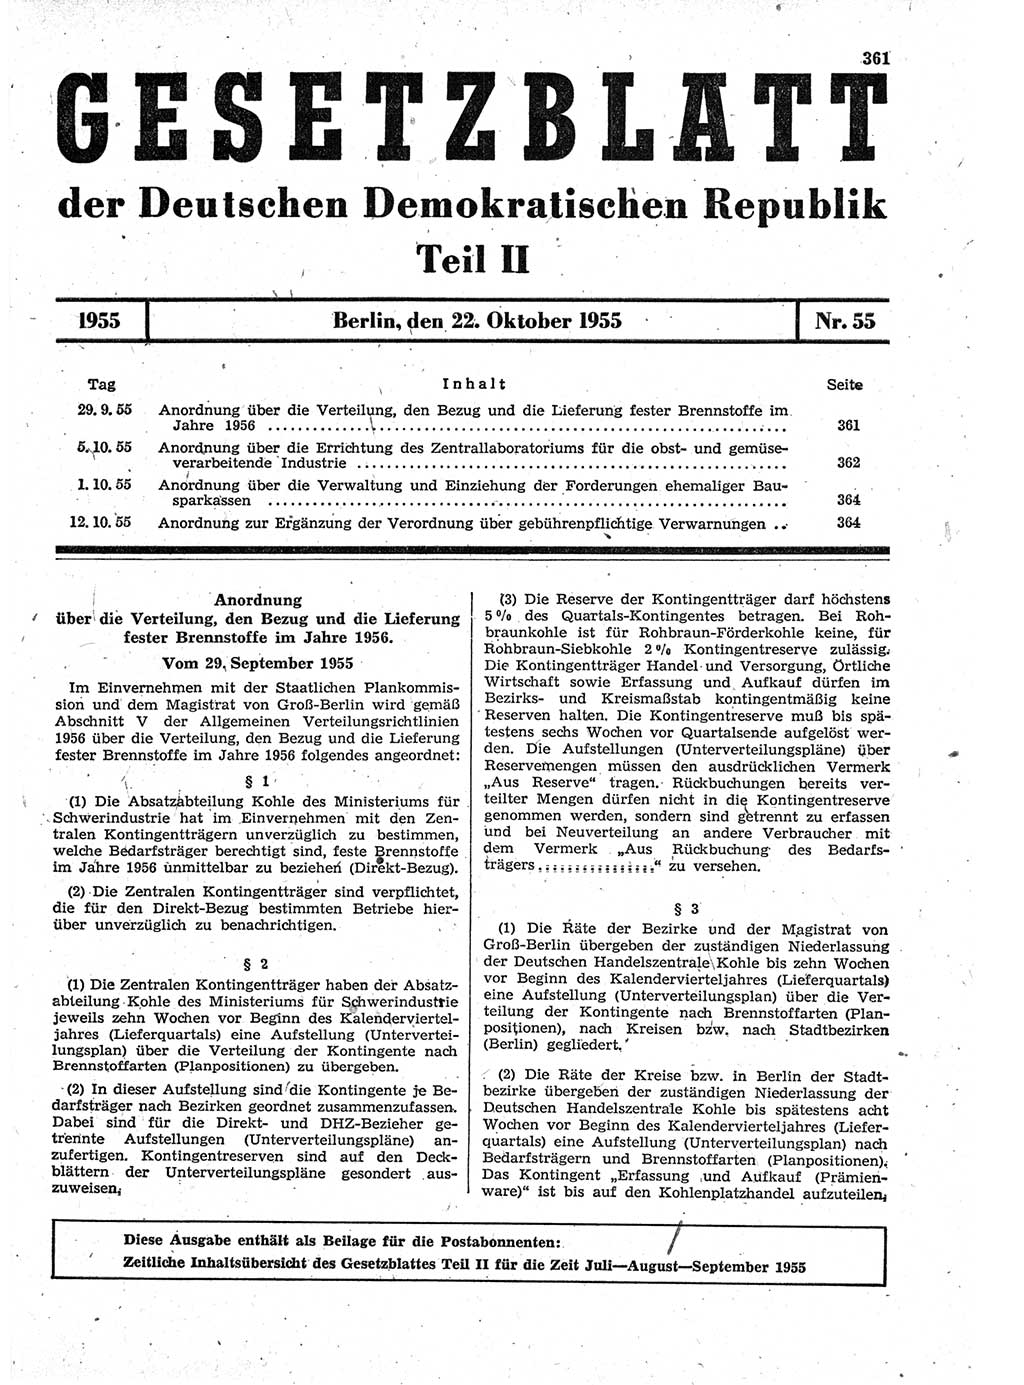 Gesetzblatt (GBl.) der Deutschen Demokratischen Republik (DDR) Teil ⅠⅠ 1955, Seite 361 (GBl. DDR ⅠⅠ 1955, S. 361)